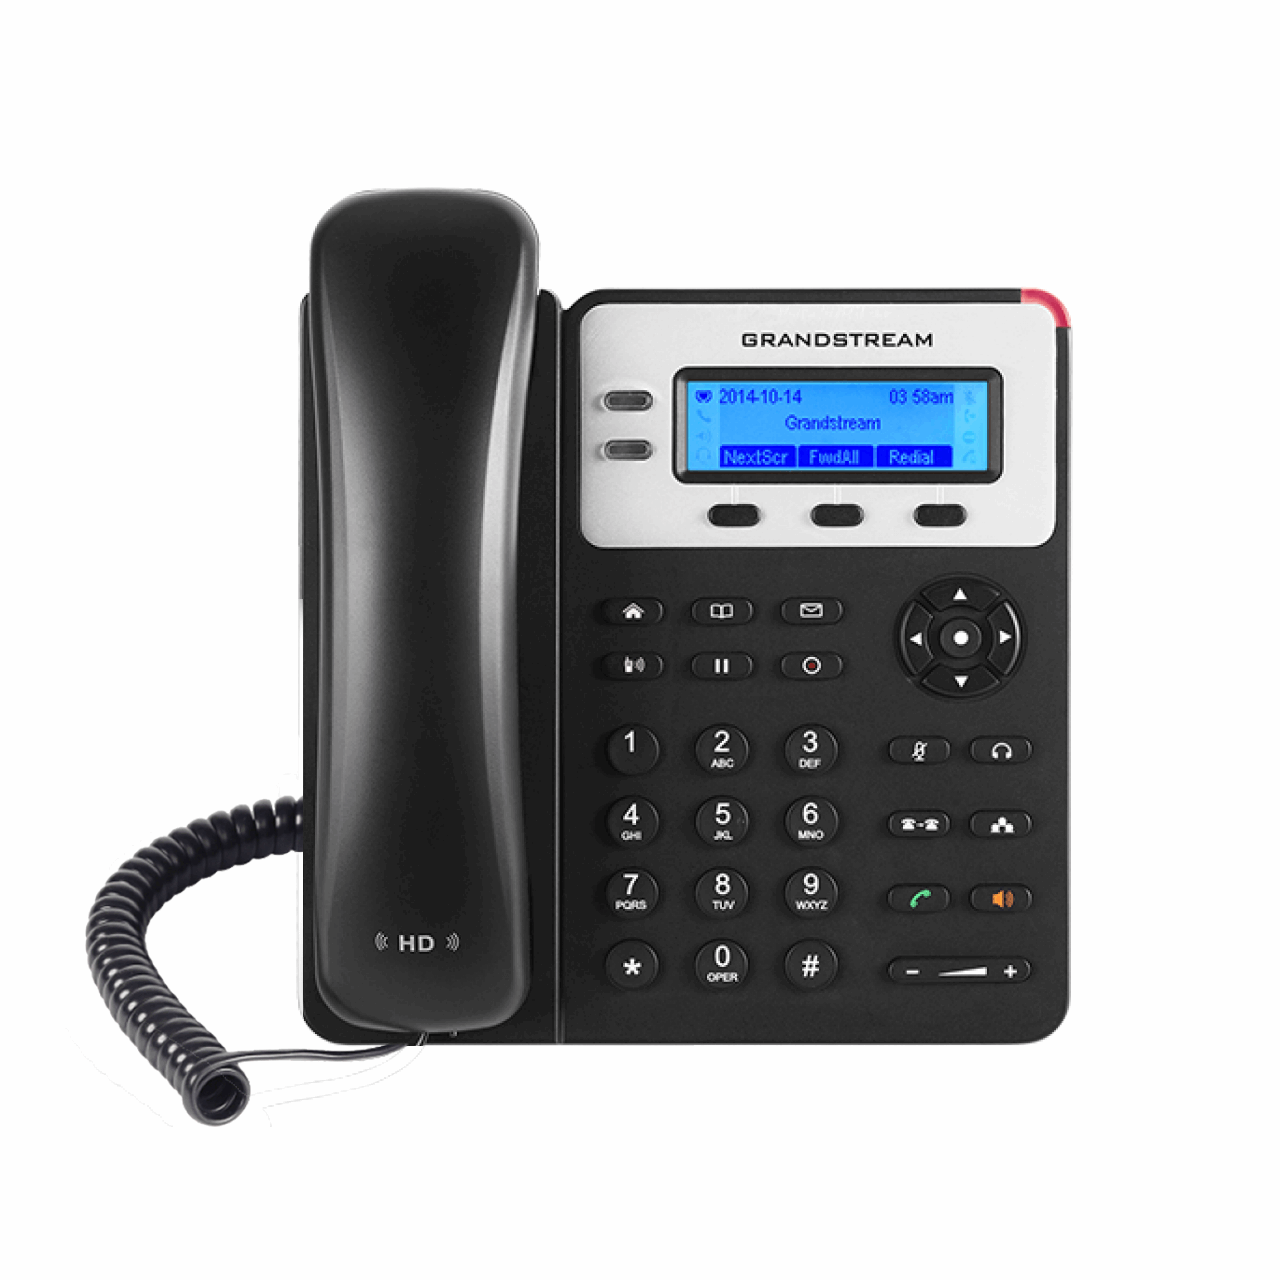 نکته خرید - قیمت روز تلفن تحت شبکه گرنداستریم مدل GXP1625 با دو اکانت SIP خرید